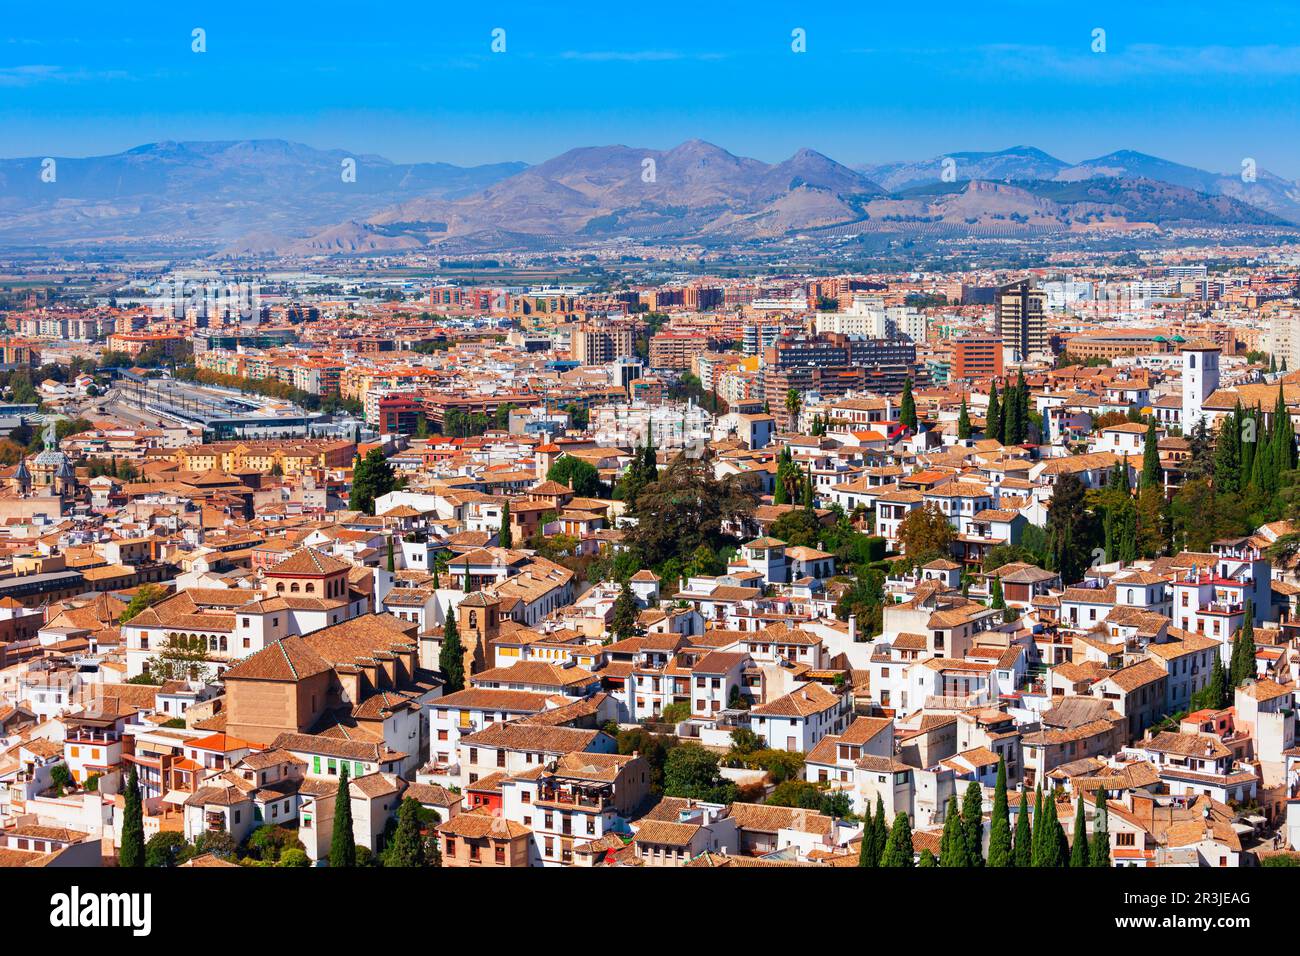 Vista panoramica aerea della città di Granada, regione dell'Andalusia in Spagna Foto Stock